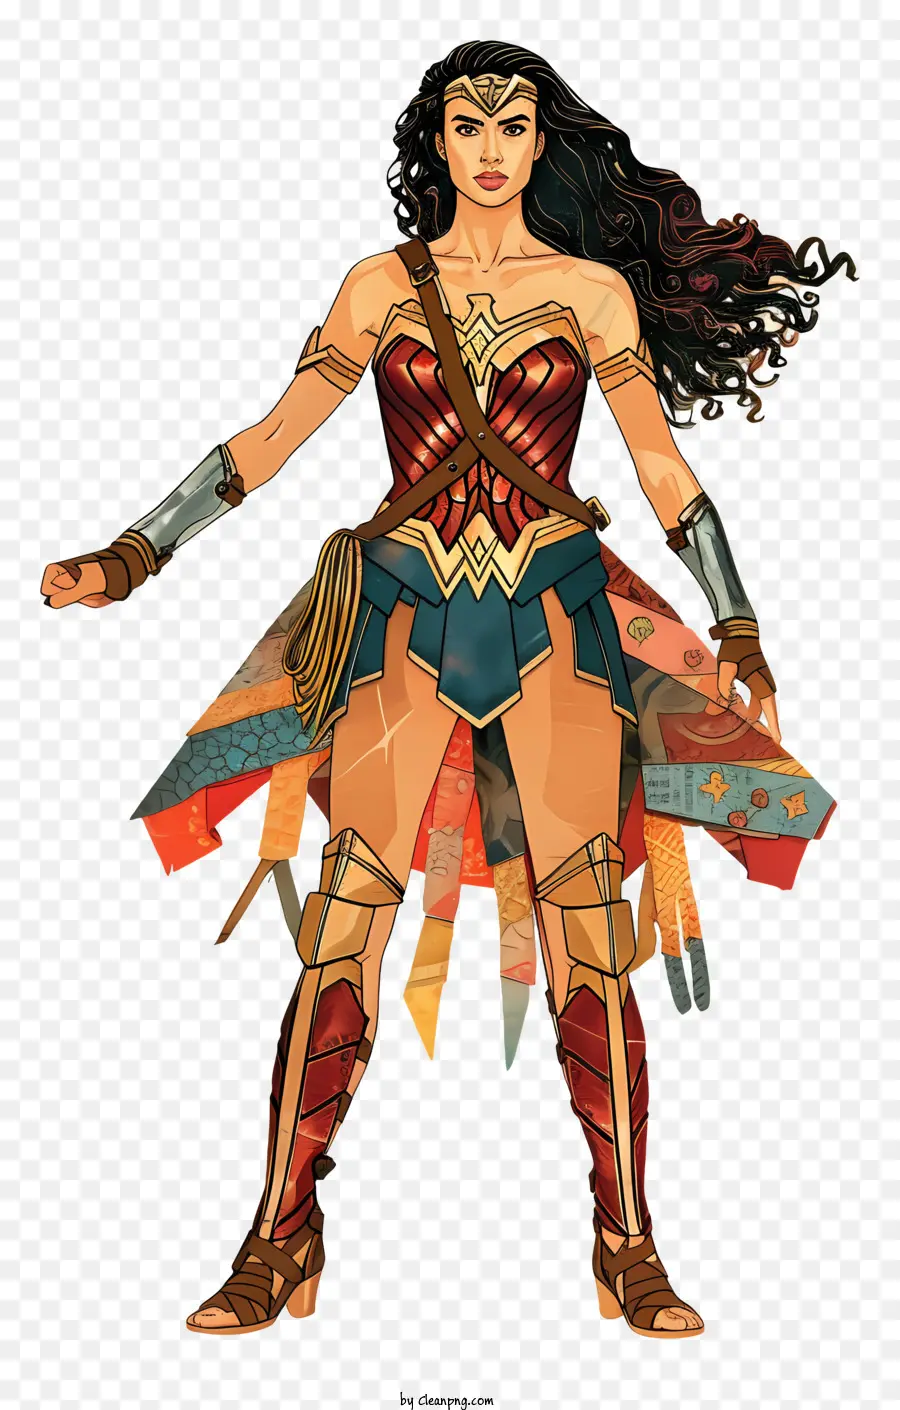 Superhelden - Zuversicht Wonder Woman hält Schwerter und strahlt Macht aus